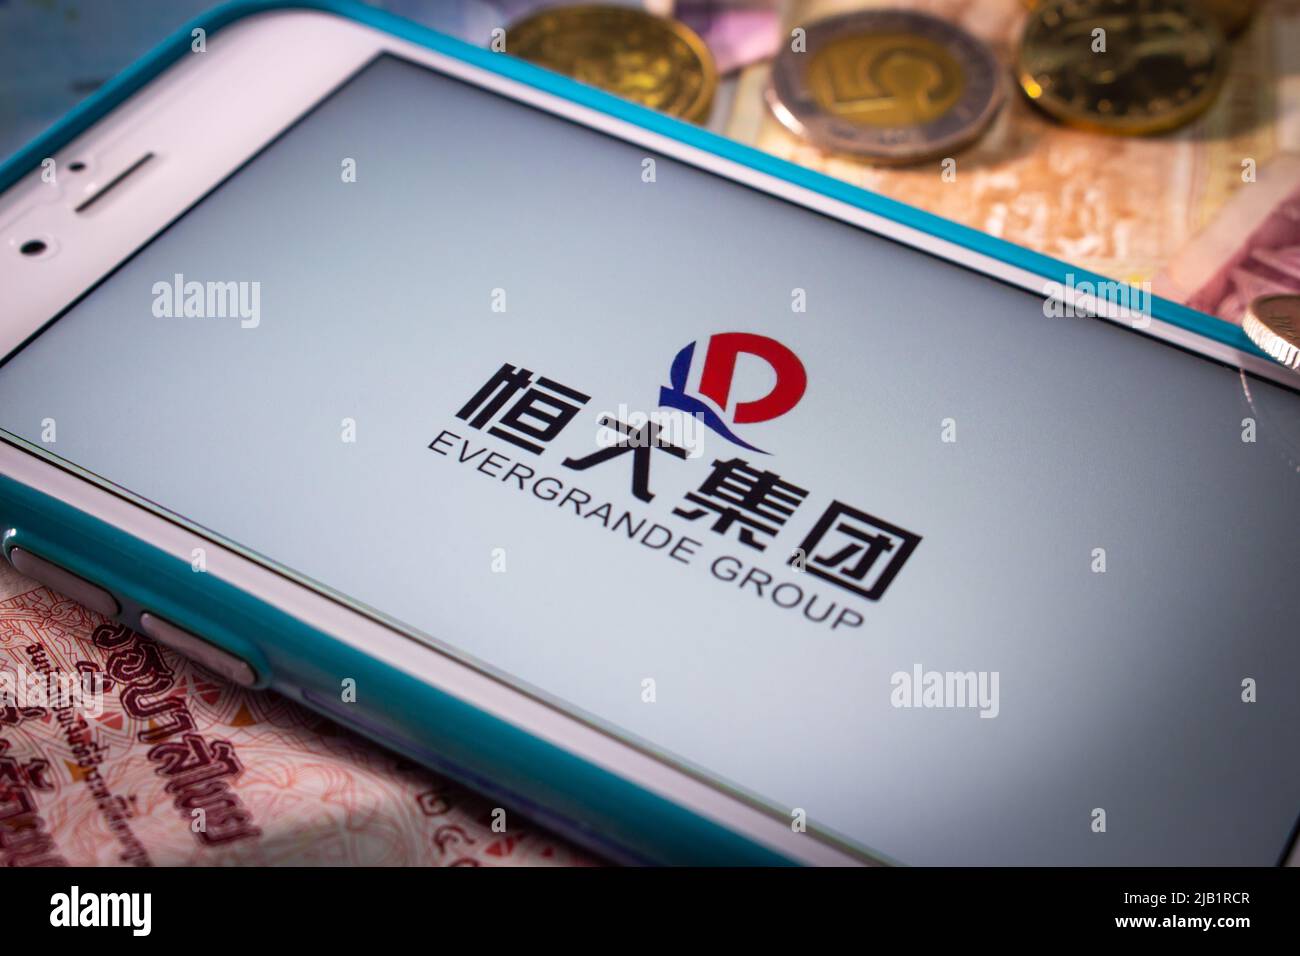 Kumamoto, JAPAN - Sep 23 2021 : die Evergrande Group, Chinas führender größter Immobilienentwickler, auf dem iPhone mit Zufallsmünzen und Banknoten Stockfoto